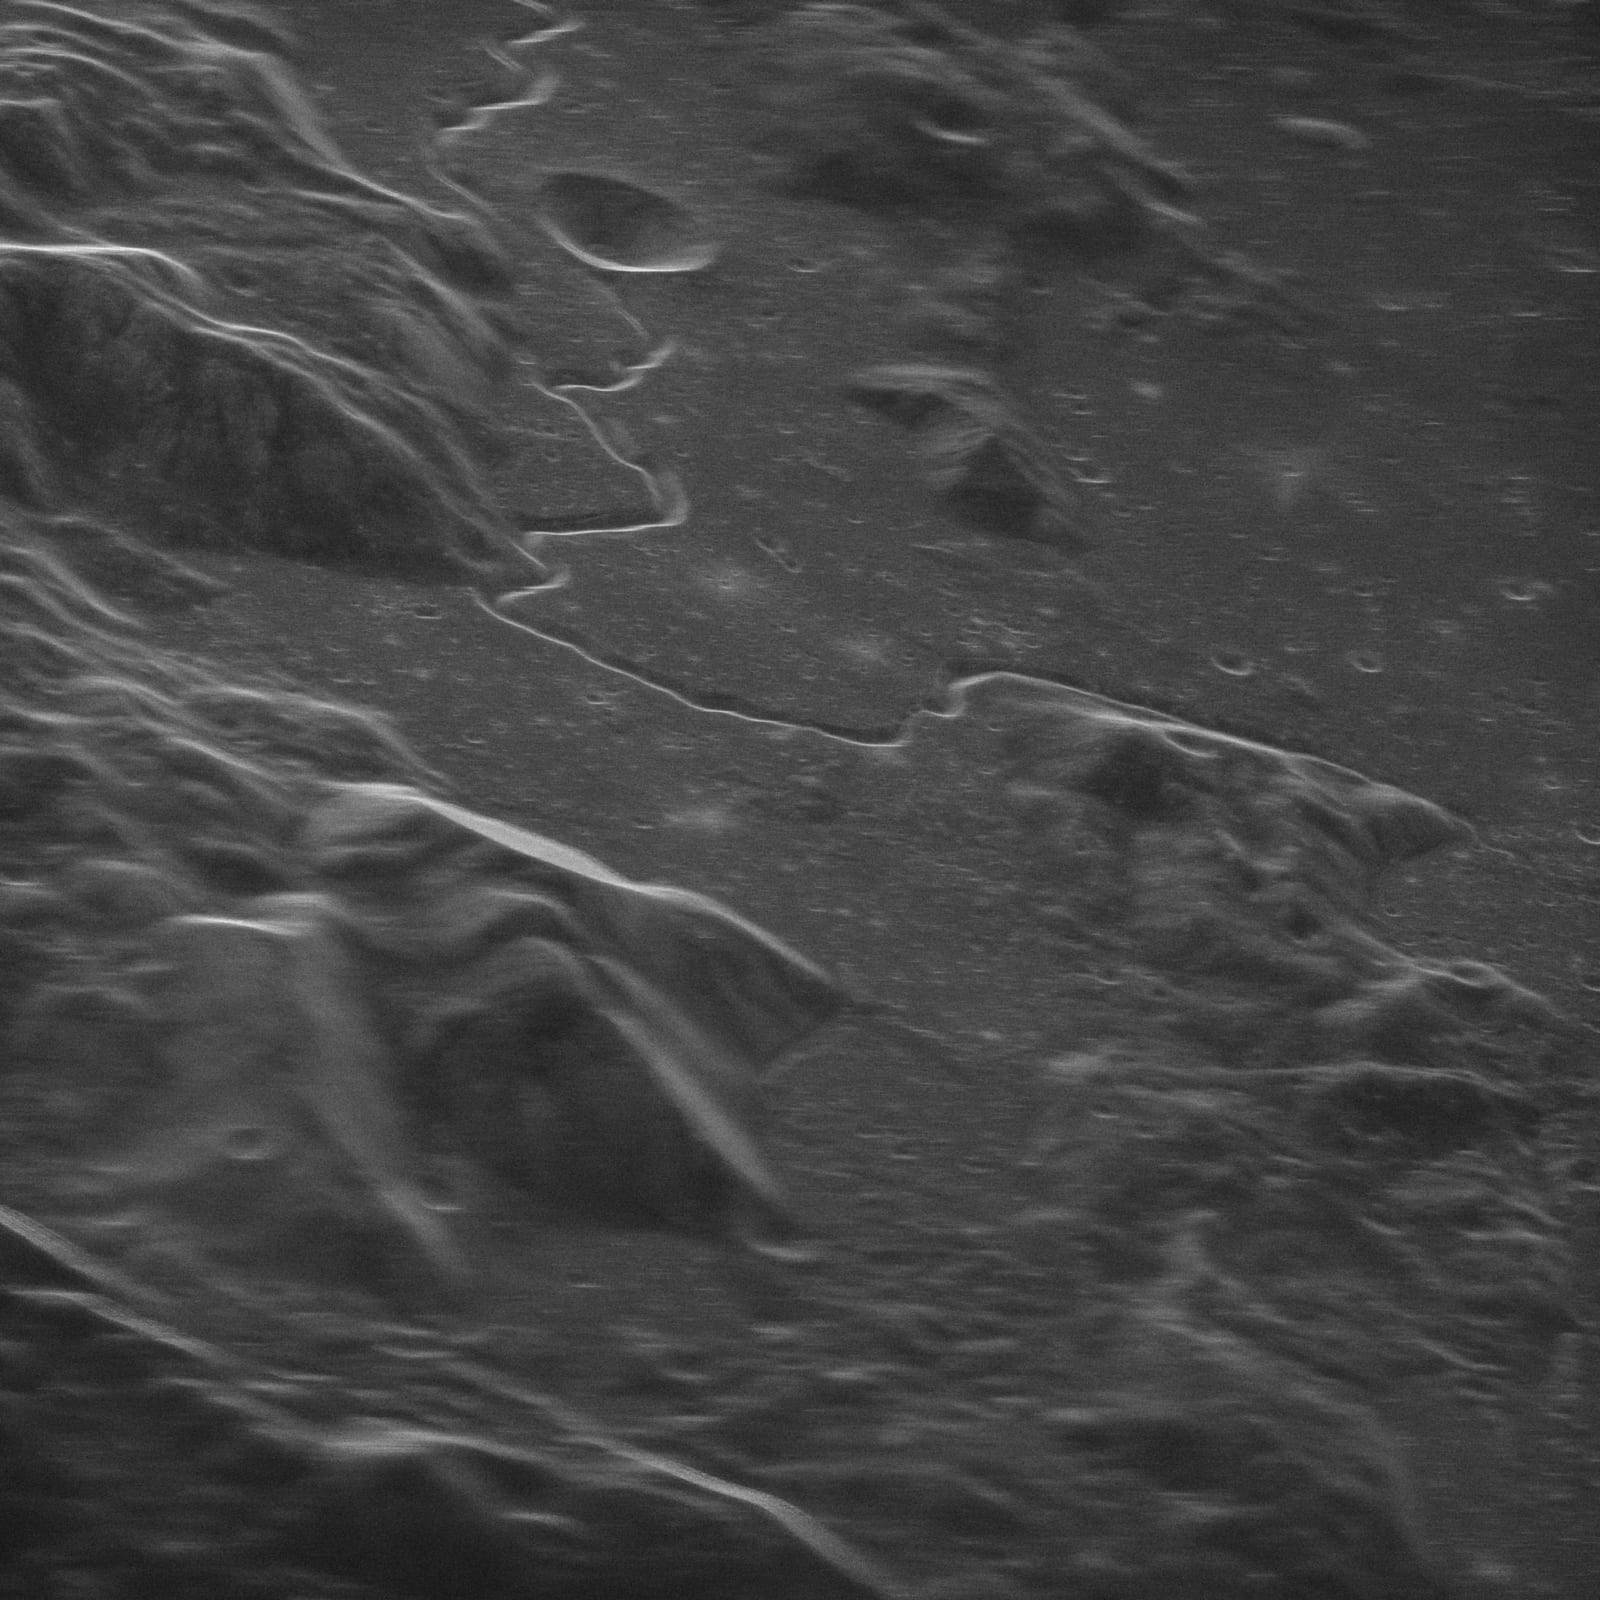 アポロ15号が1971年に上陸した地点のレーダー画像。この画像は地球上から撮影されている。